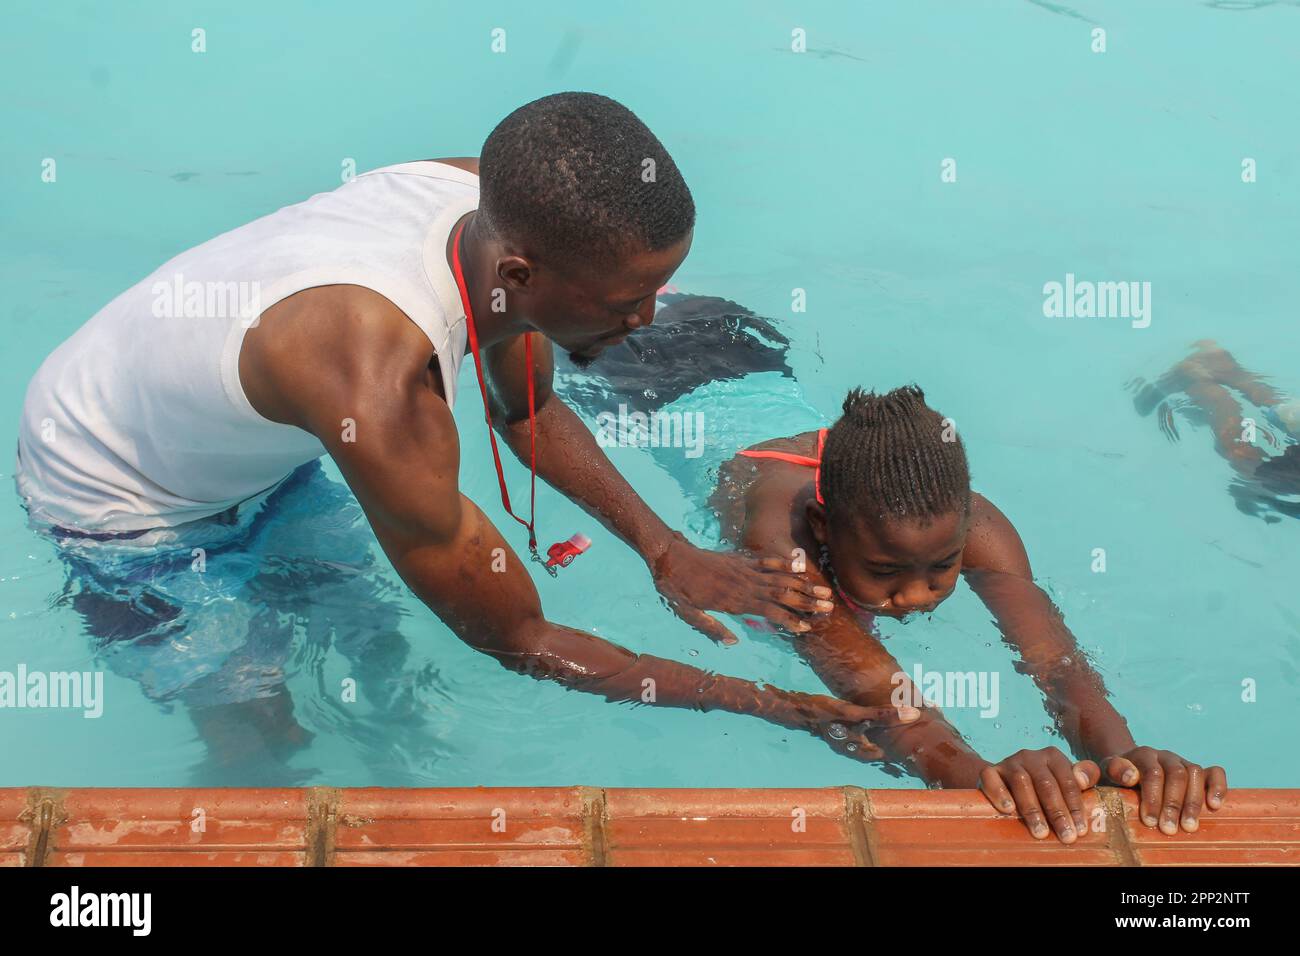 Chimuka Mukonka, links, bringt Blessings Banda, 12, am 8. Oktober 2022 das Schwimmen an der Meerjungfrauen-Schwimmakademie in Lusaka, Sambia, bei. Mukonka, der die Akademie gründete, sagt: „Wir hören von Menschen, die ertrinken, und wir können Leben retten, indem wir der nächsten Generation das Schwimmen beibringen.“ (Prudence Phiri/Global Press Journal) Stockfoto